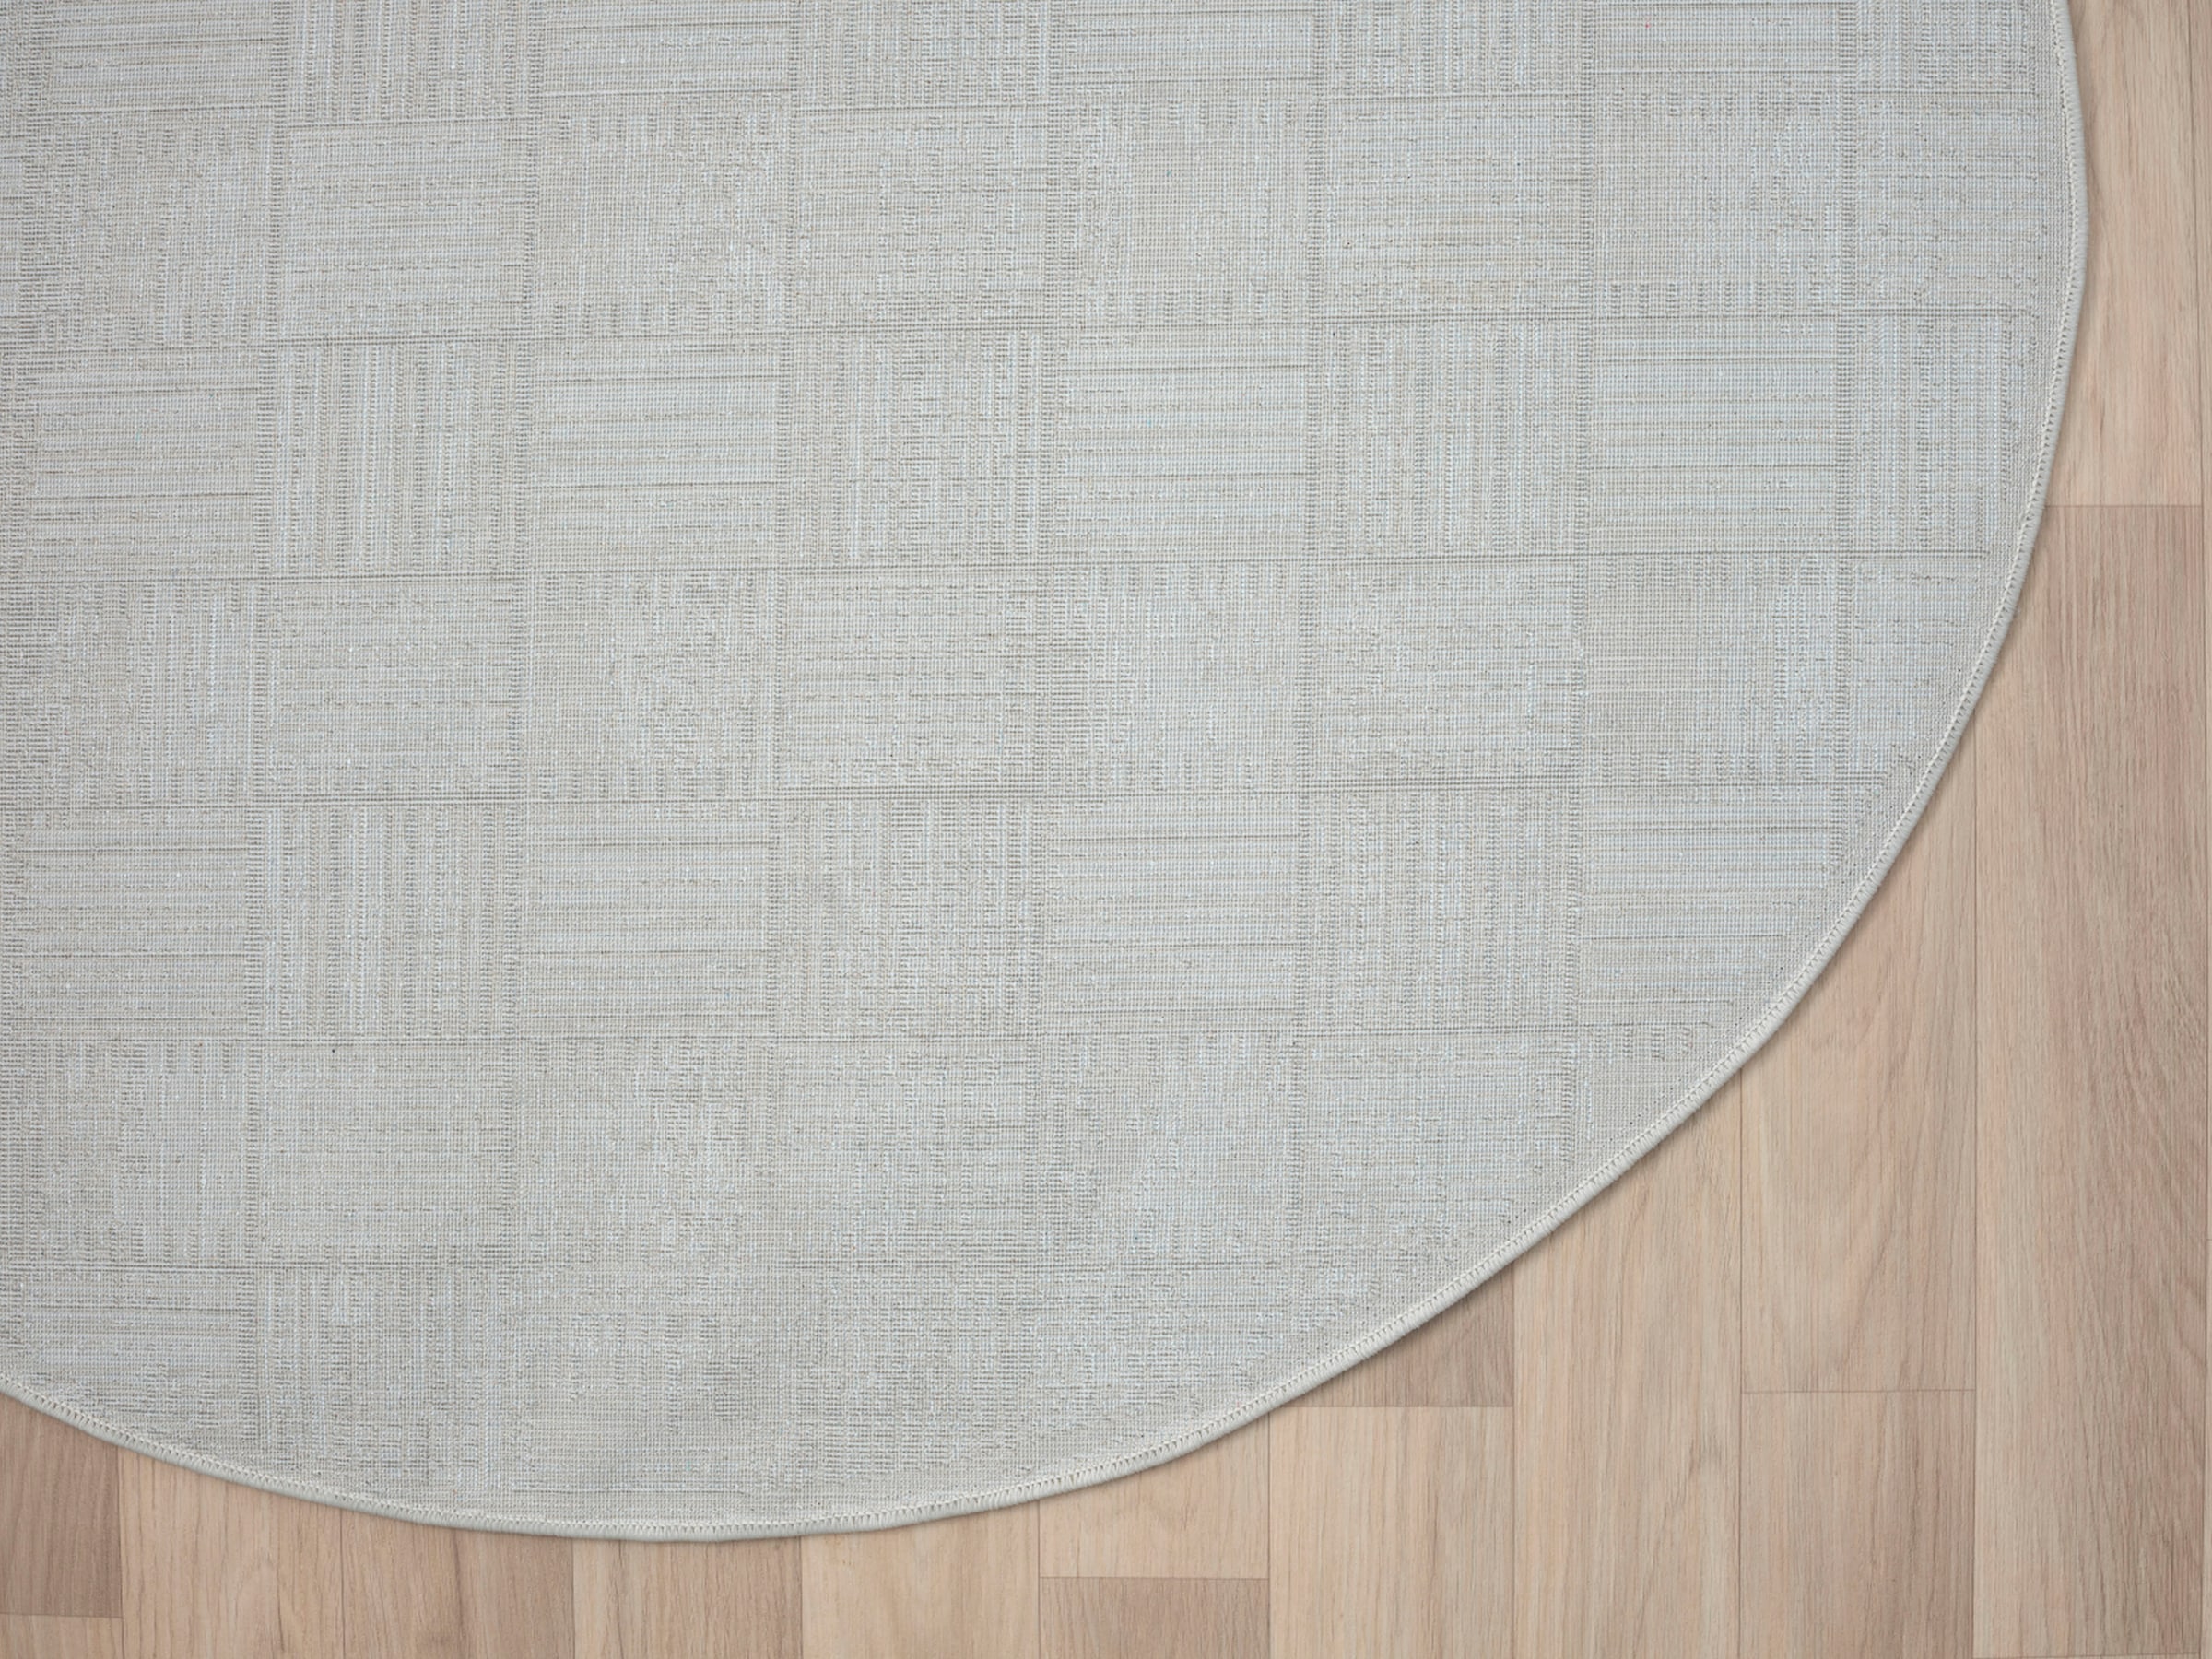 Myflair Möbel & Accessoires Teppich »My House«, rund, Kurzflor, Retro-Style, besonders weich durch Microfaser